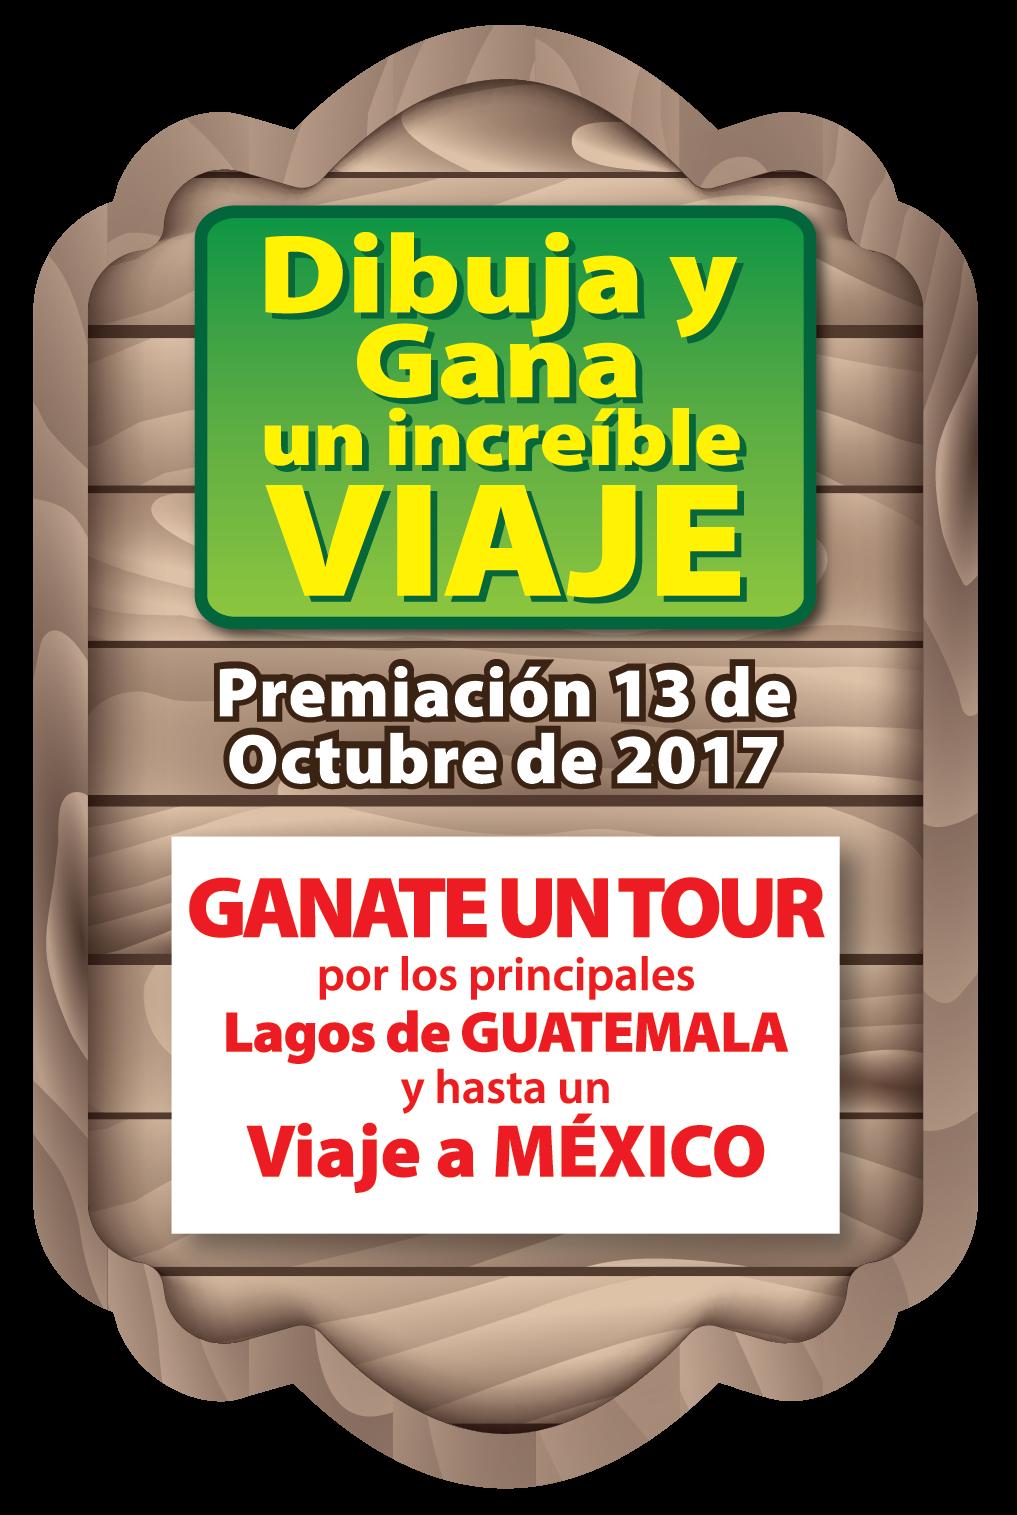 Los niños ganadores del primer lugar se les entrega como premio adicional un tour por los principales lagos de Guatemala